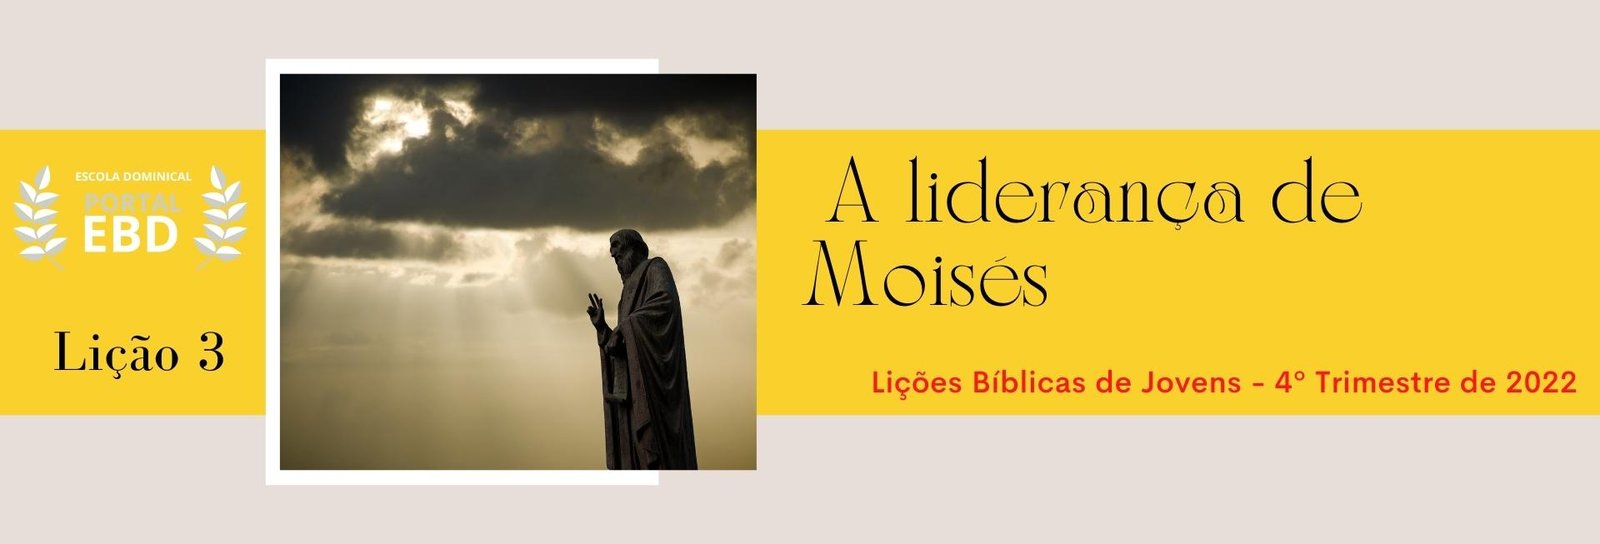 Lição 3 - A liderança de Moisés II